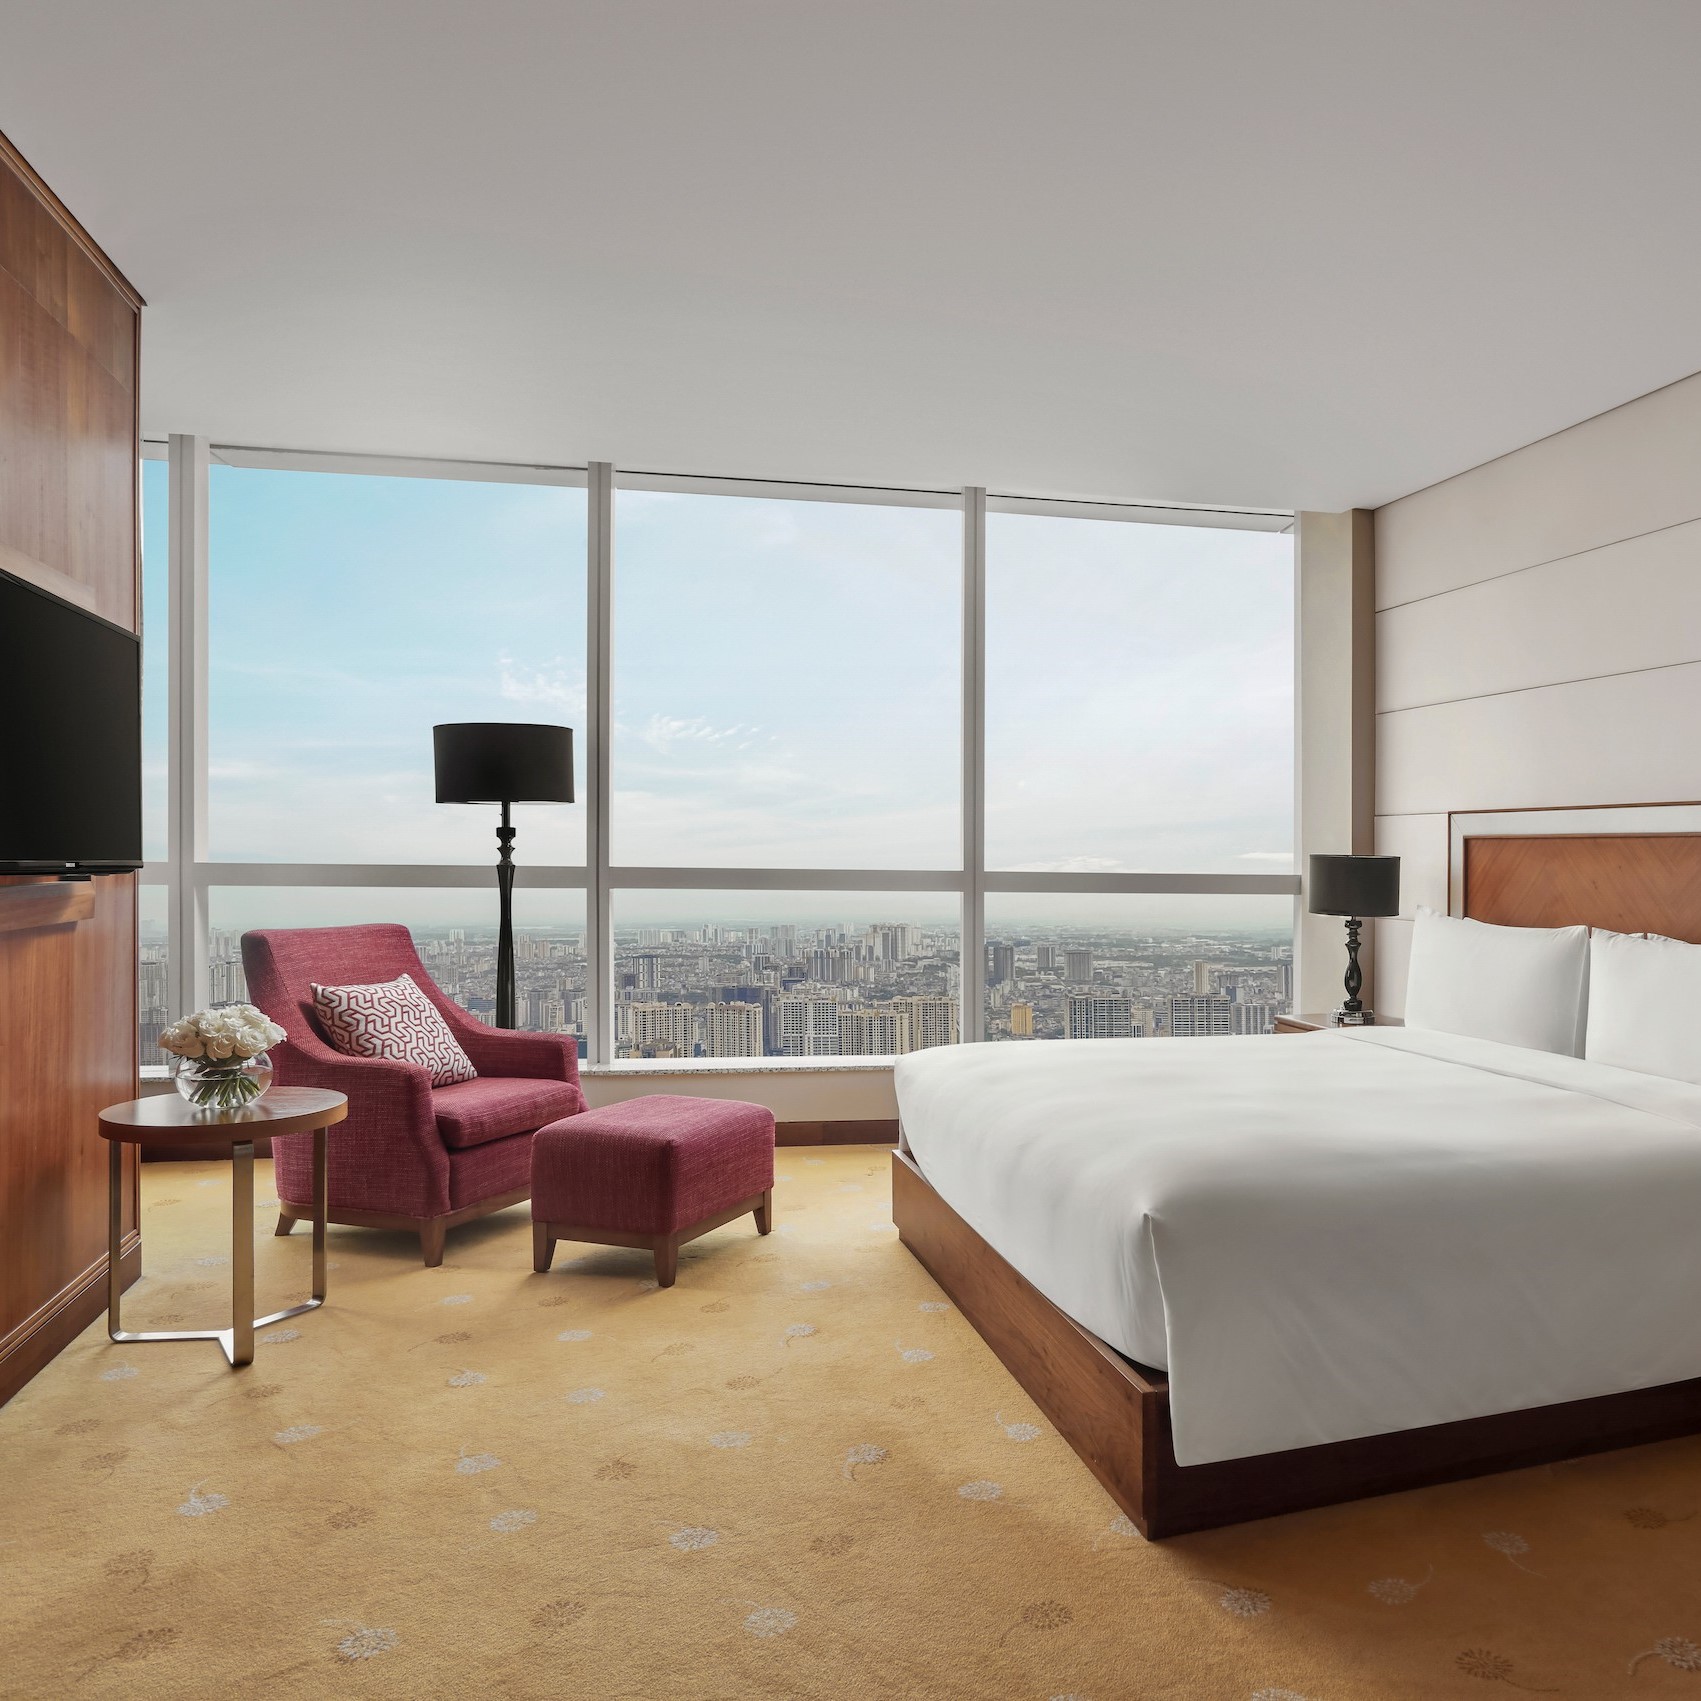 Phòng Junior Suite tại khách sạn 5 sao với tiện nghi sang trọng, đặc quyền Club InterContinental và tầm nhìn toàn cành thành phố Hà Nội